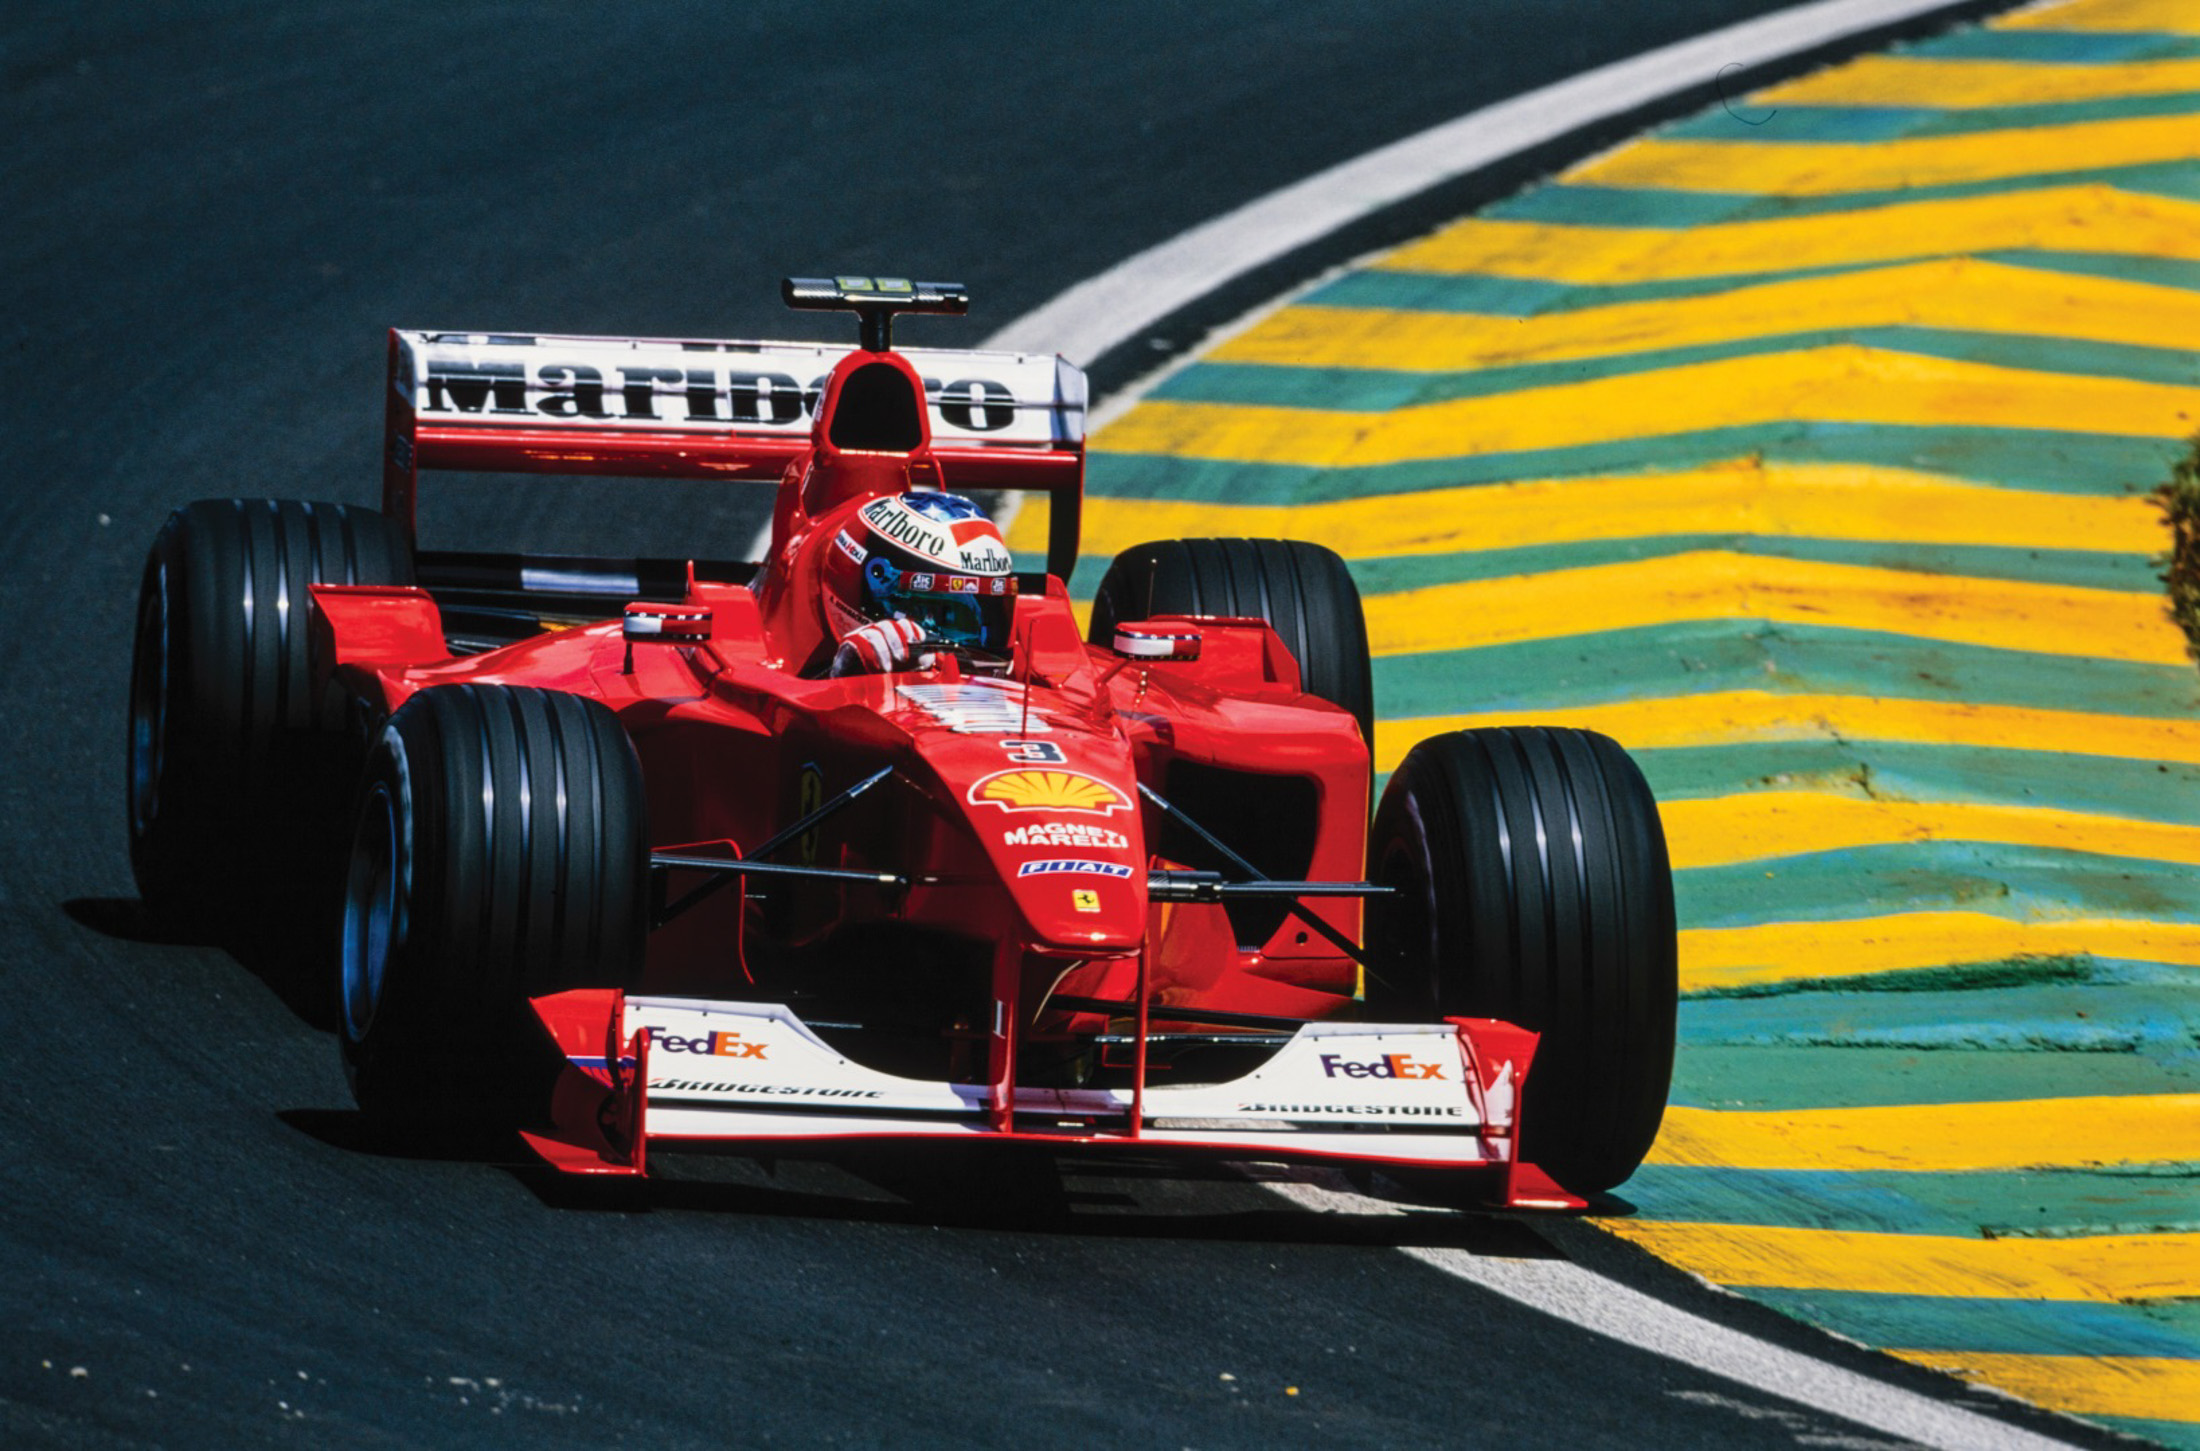 SPEED  Formula 1 car racing, Classic racing cars, Formula 1 car